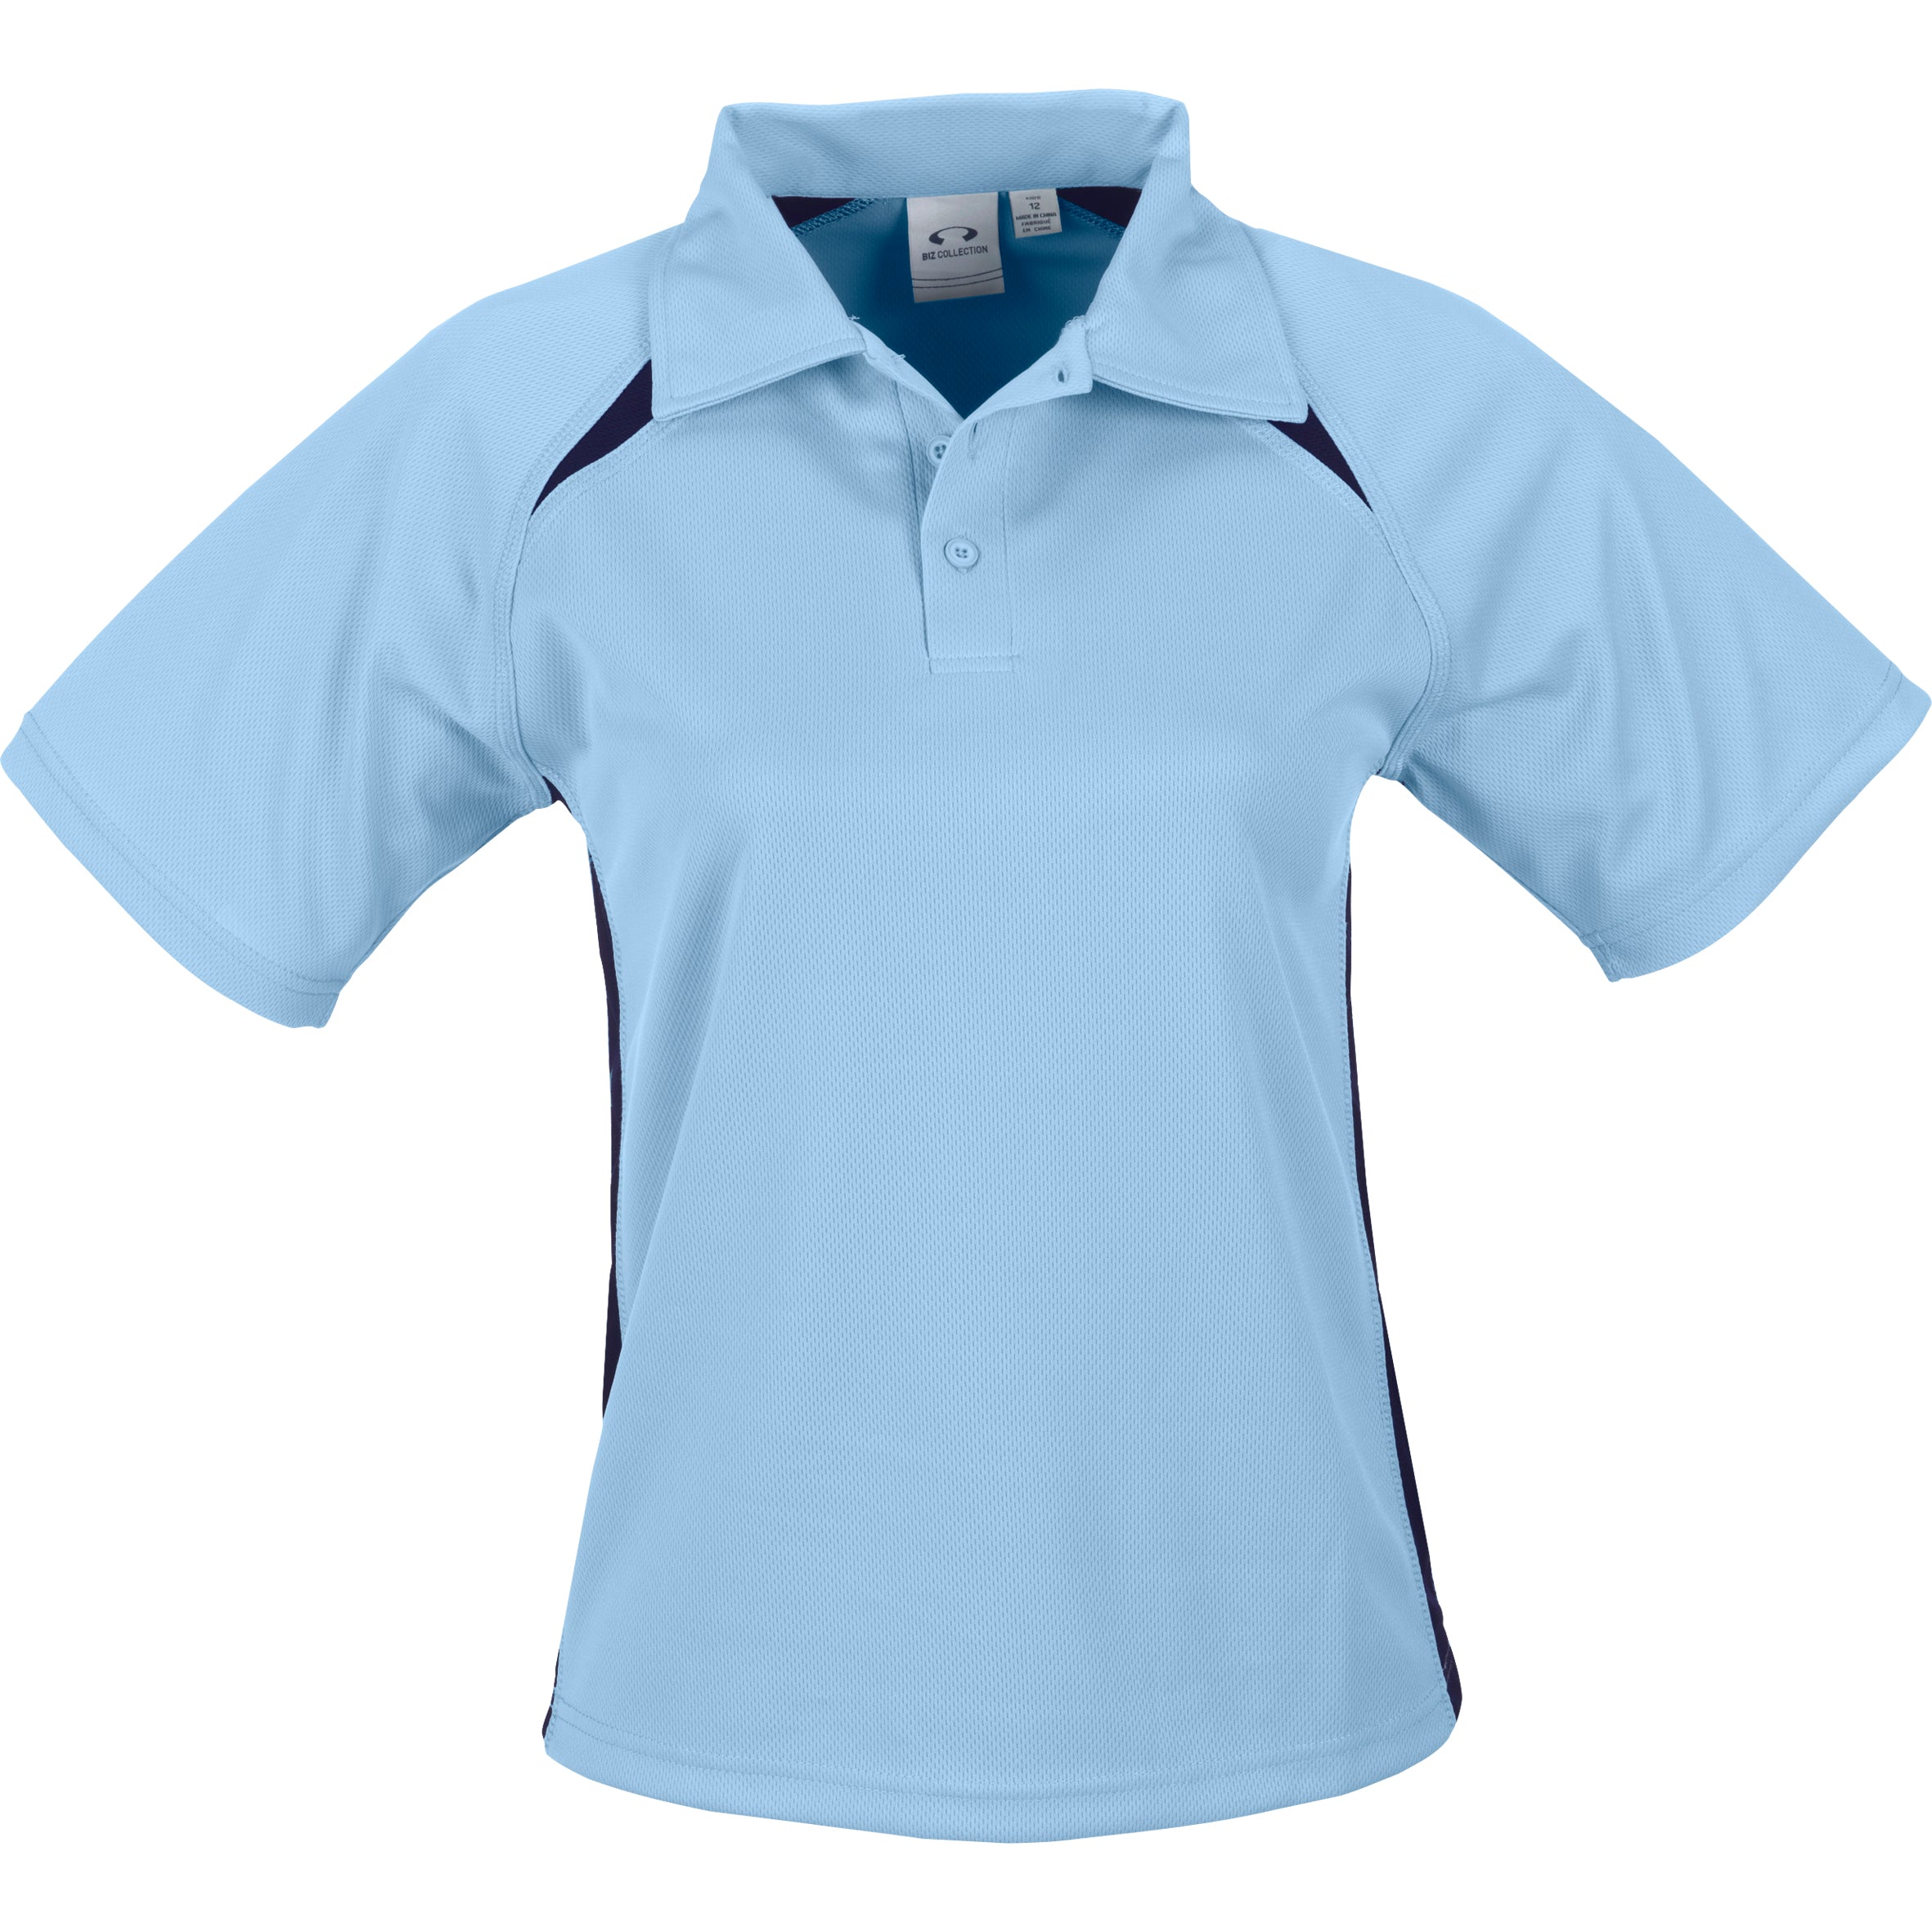 Kids Splice Golf Shirt-Shirts & Tops-8-Light Blue-LB